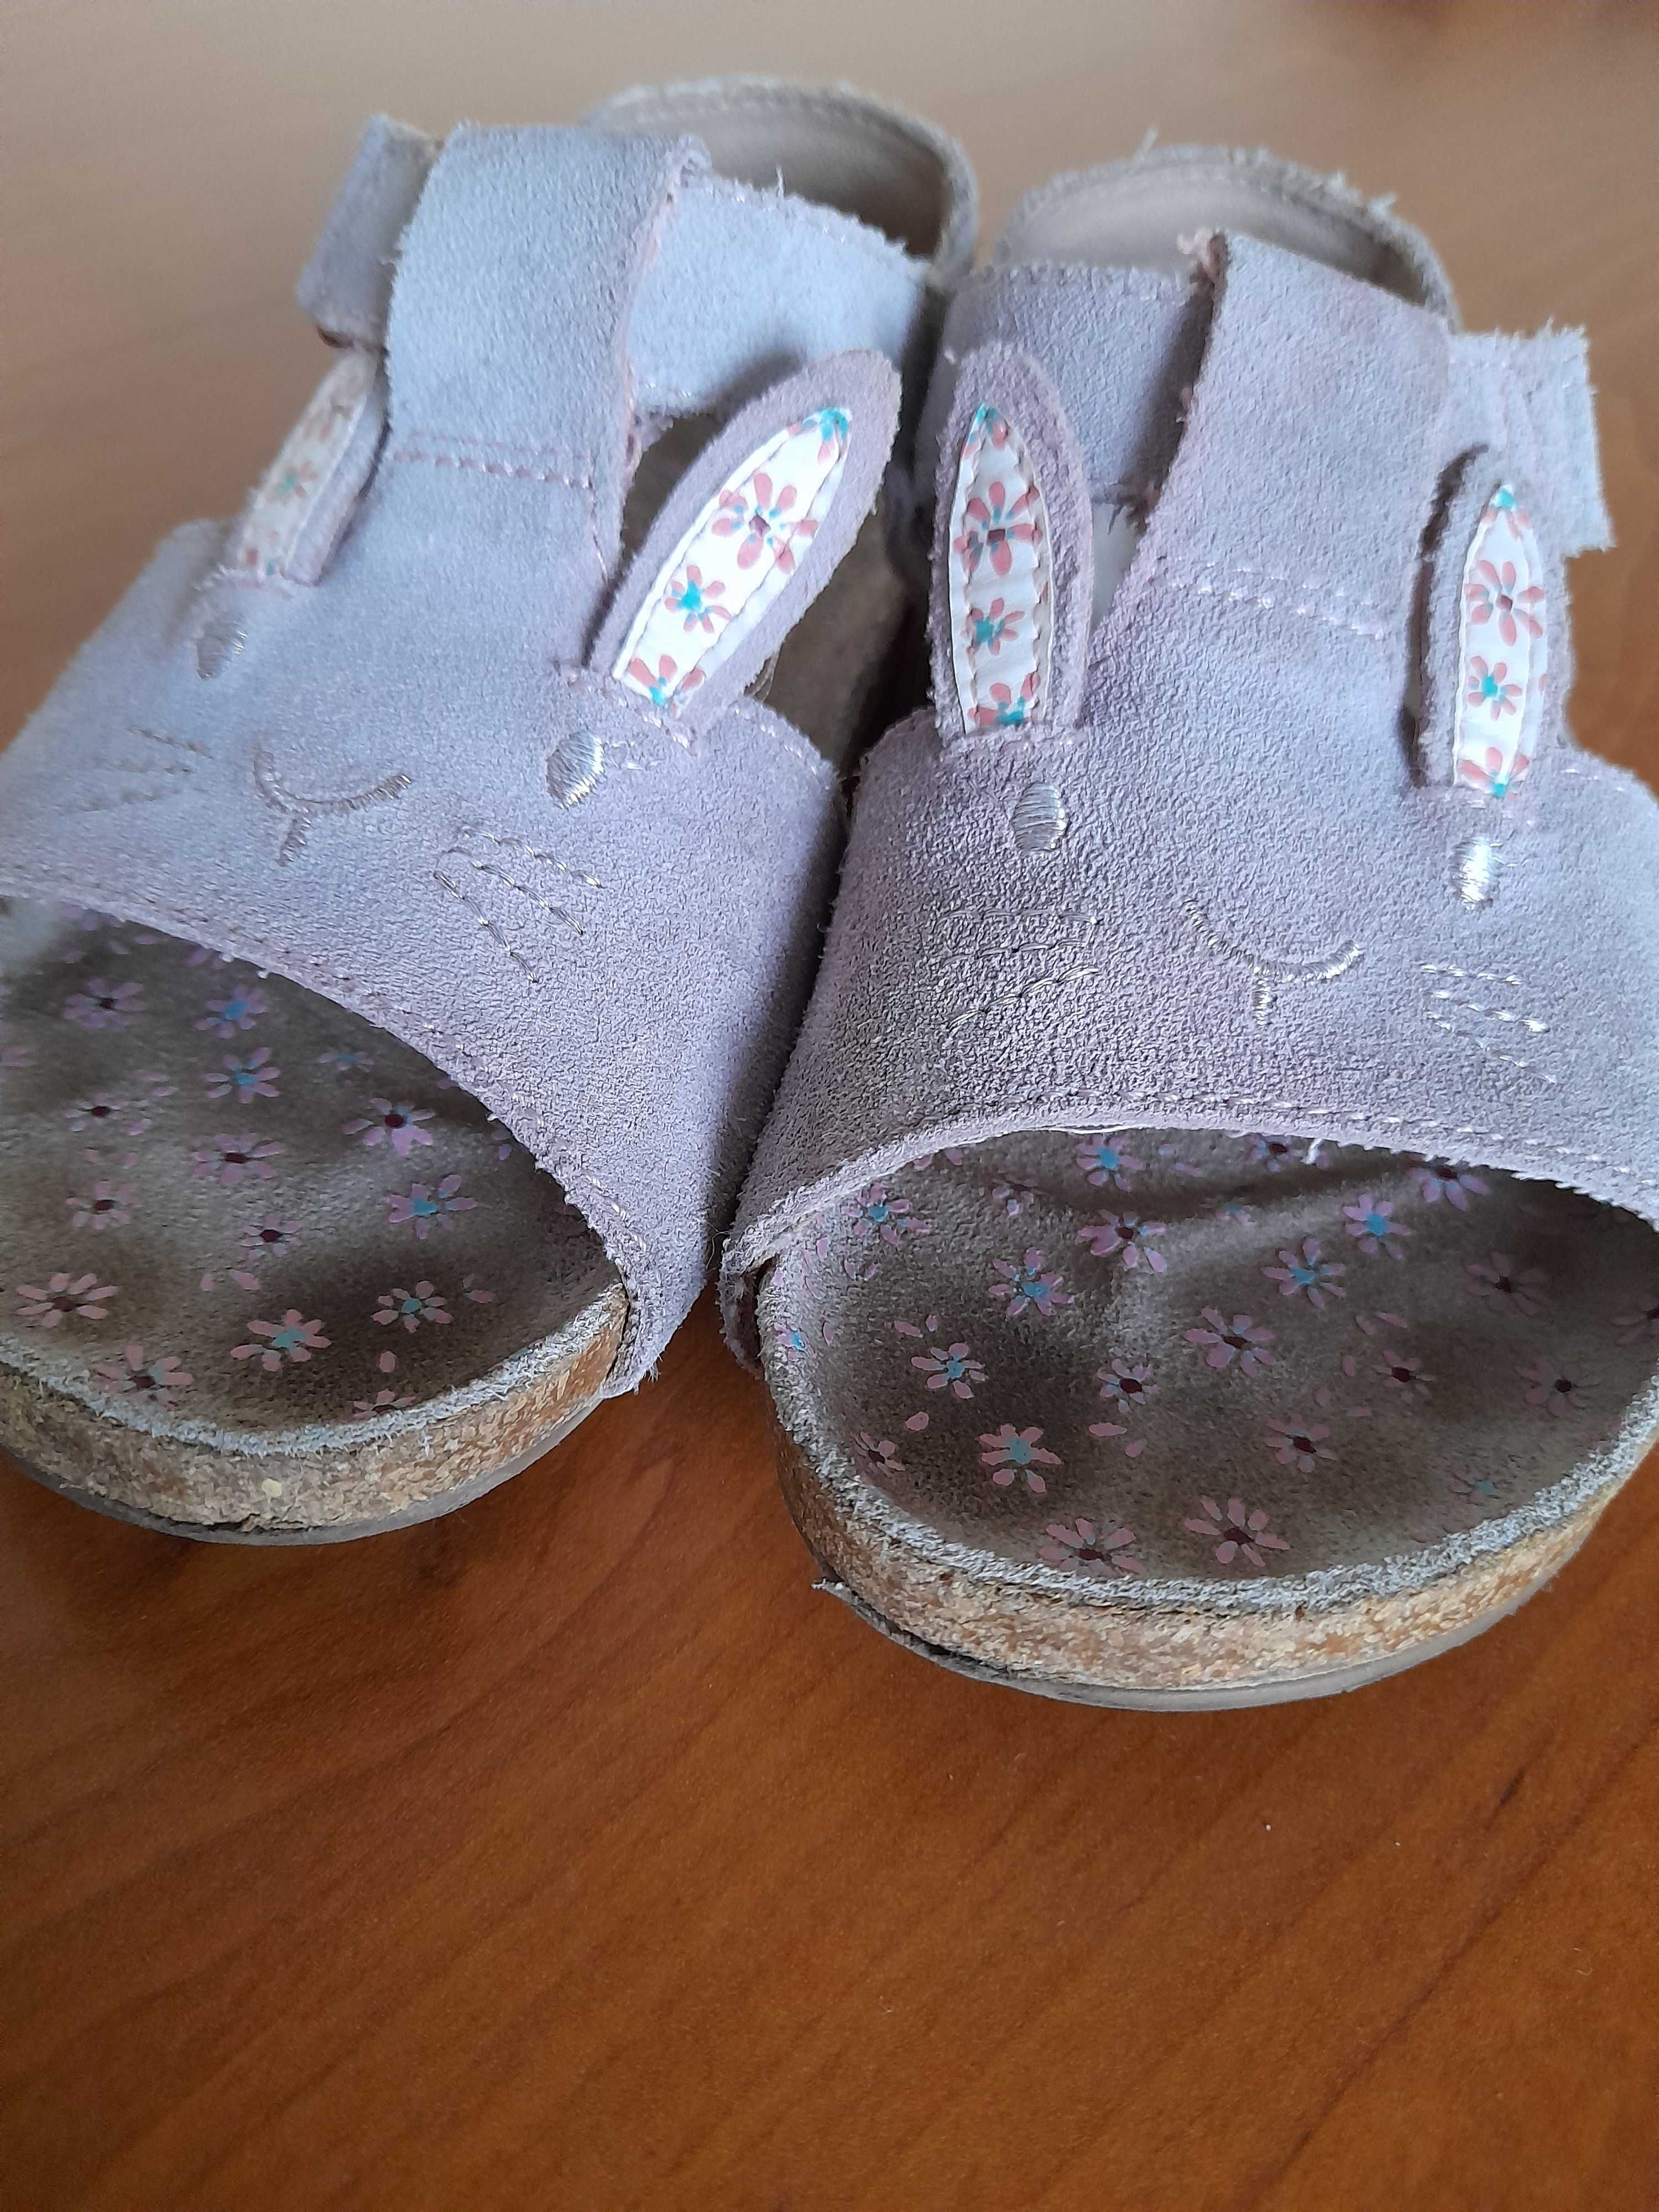 Sandałki dla dziewczynki. Zdrowa stopa.